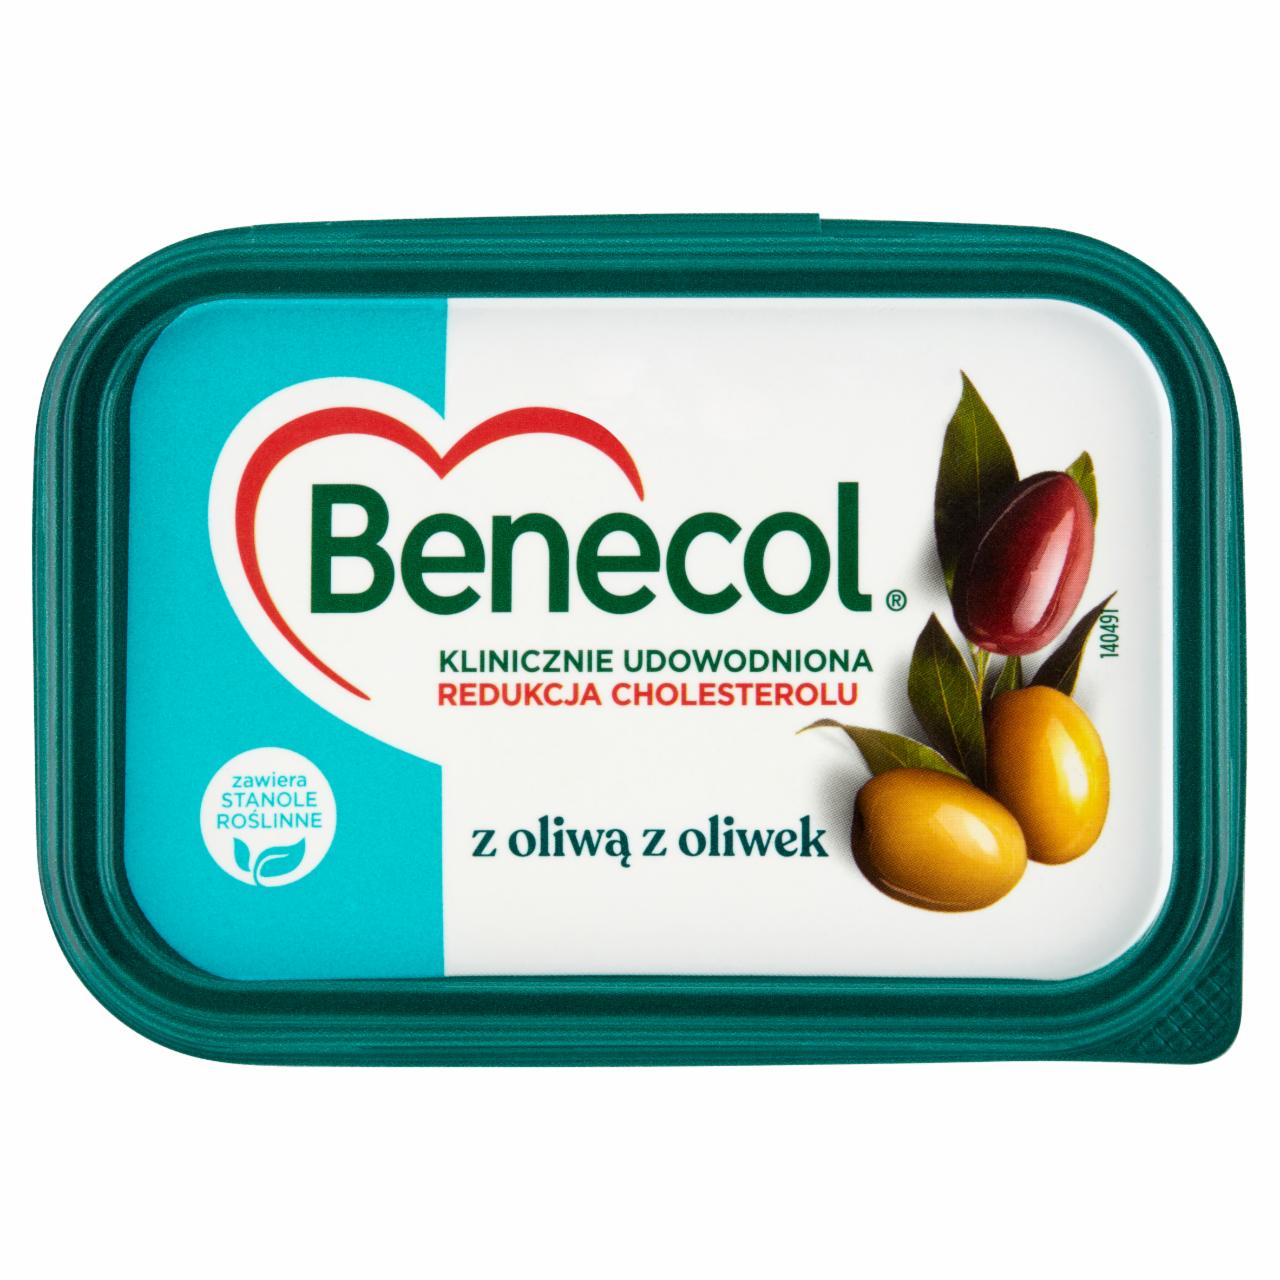 Zdjęcia - Benecol Tłuszcz do smarowania z dodatkiem stanoli roślinnych z oliwą z oliwek 225 g